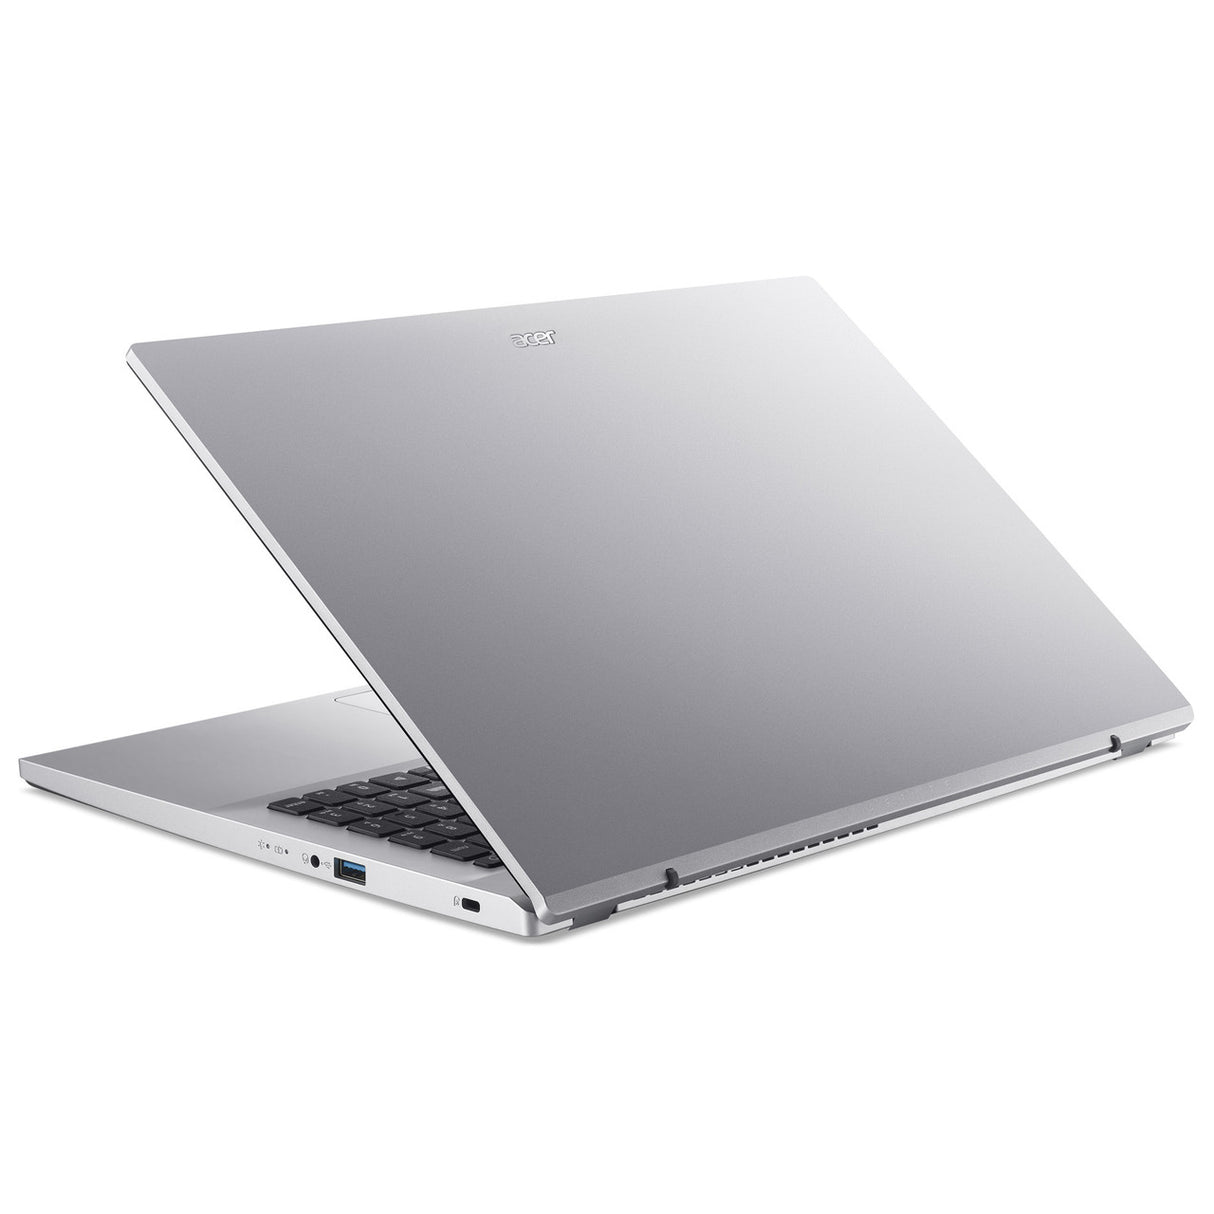 Laptop 15.6'' Acer Aspire 5 A515-45G-R3KH Full HD, AMD Ryzen 3 5300U 2.60GHz, 8GB, 256GB SSD, Windows 10 Home 64-bit, Español, Plata - NX.A88AL.001